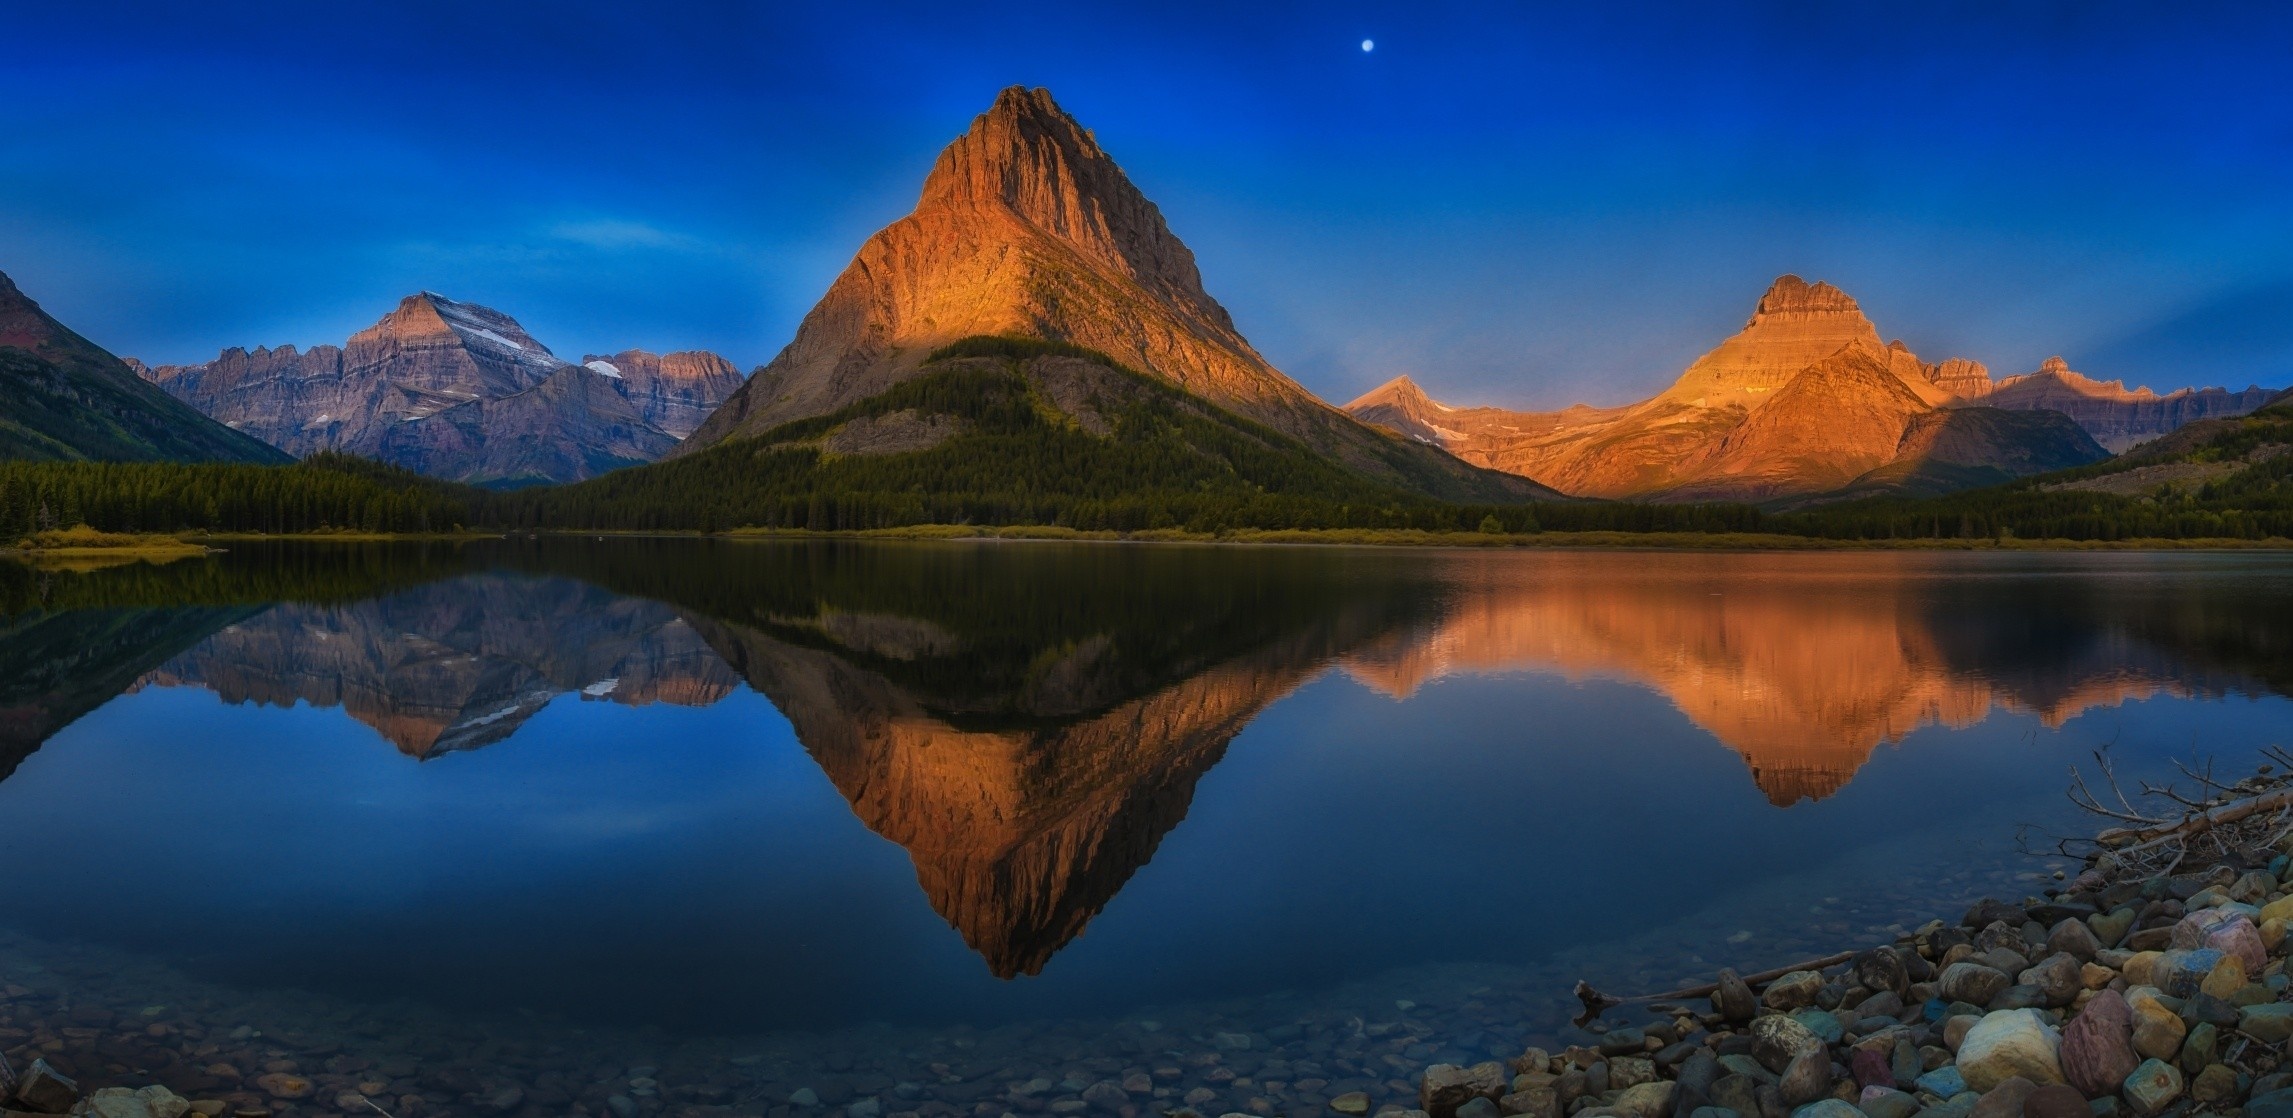 Glacier National Park, Travels, Landscape, Nature, 2300x1120 Dual Screen Desktop